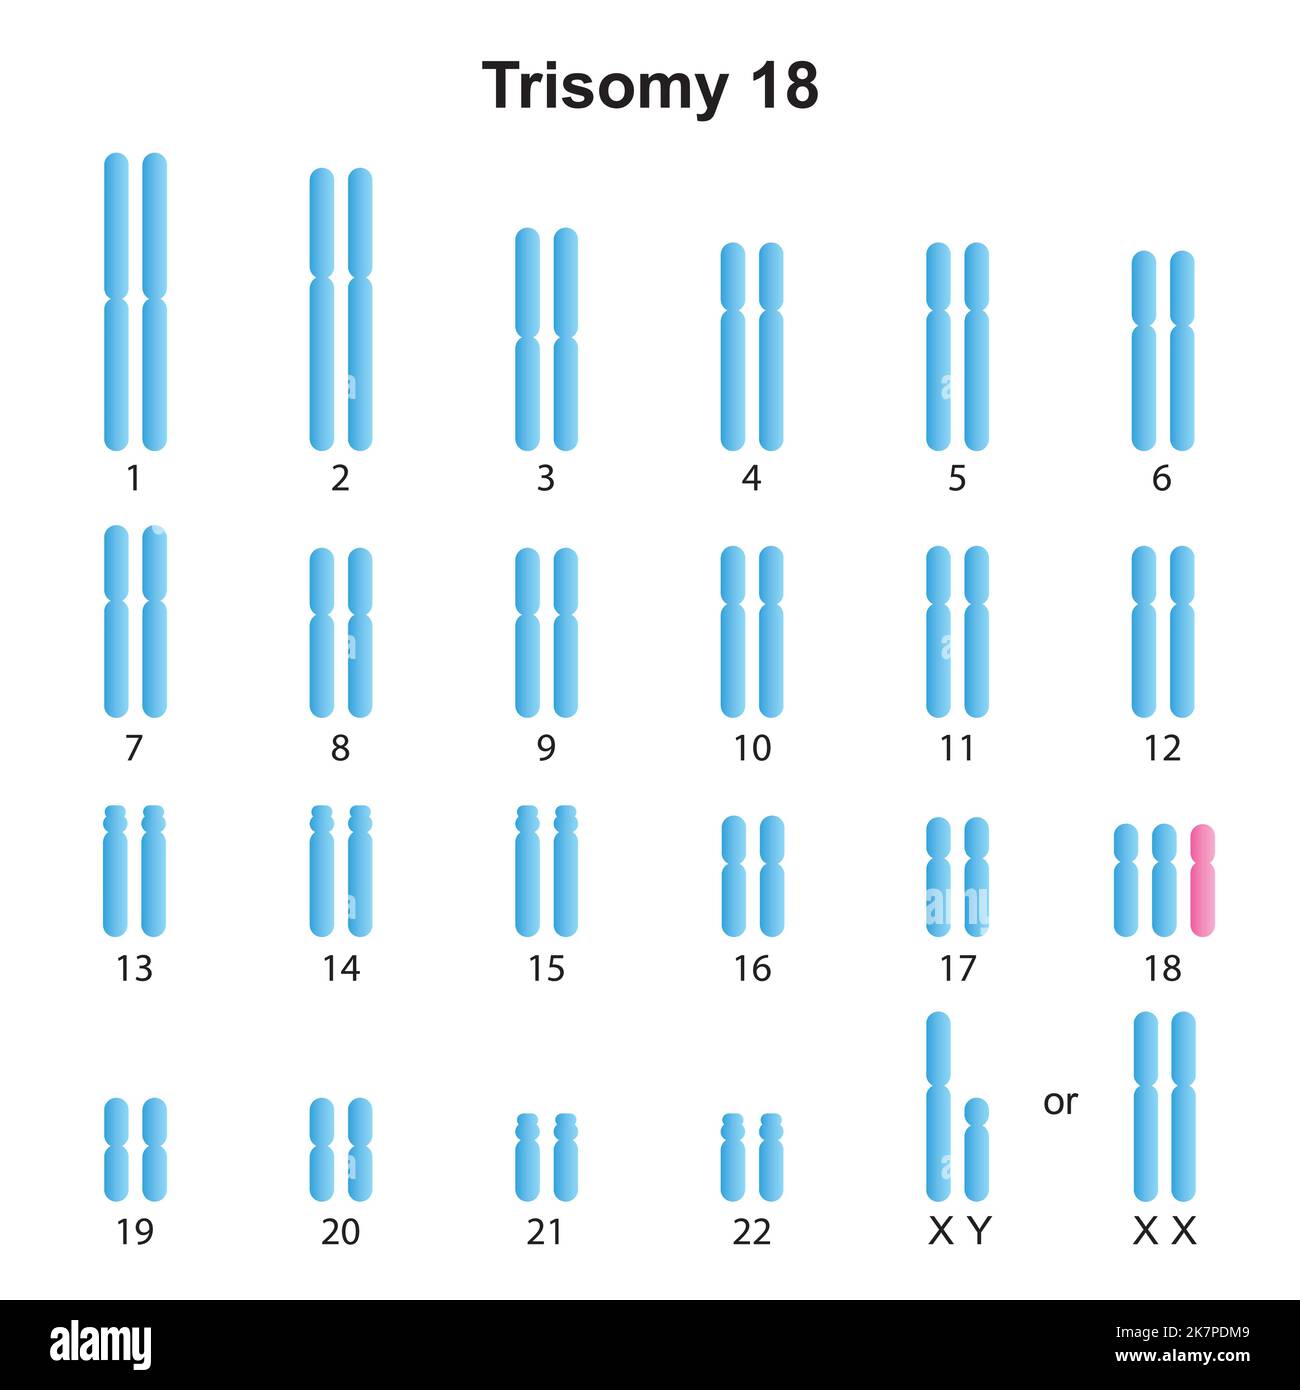 Scientific Designing Of Edwards Syndrome Trisomy 18 Karyotype